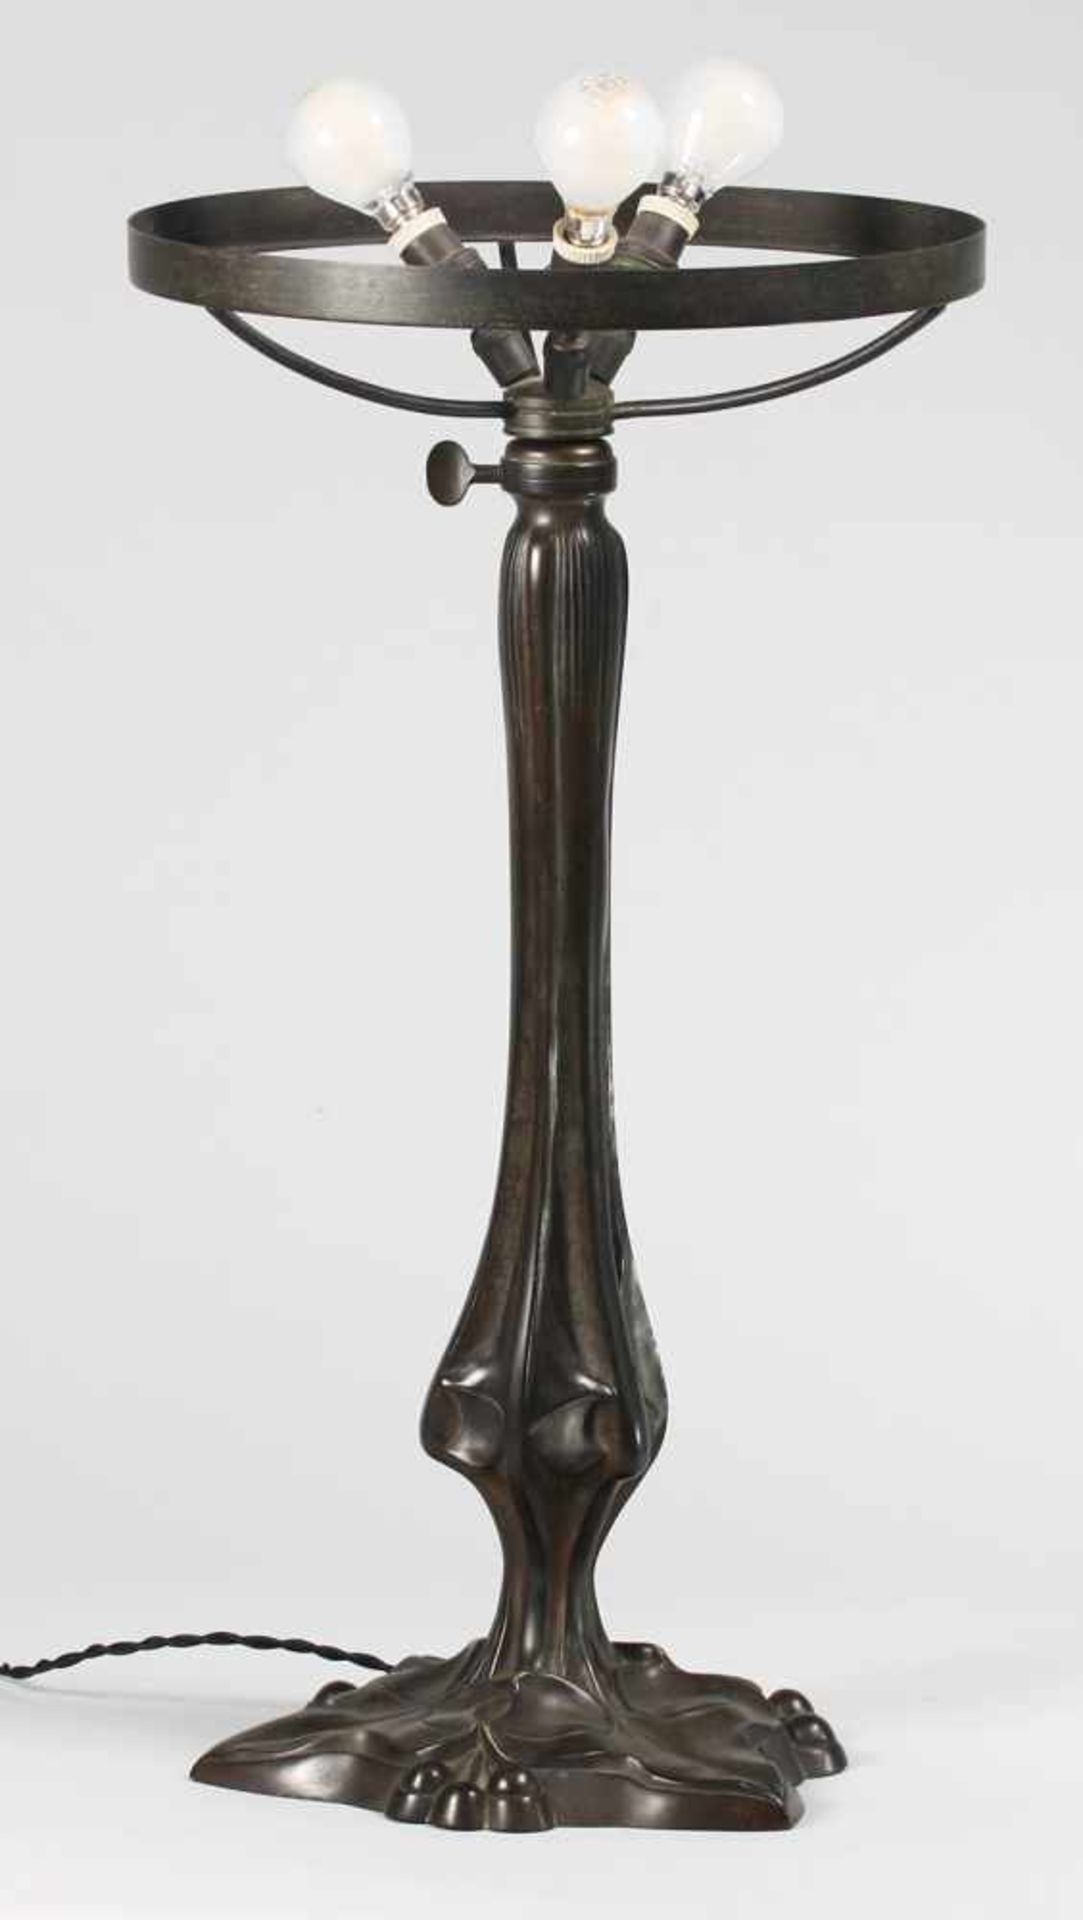 Große Jugendstil-Tischlampe3-flg. Bronze, patiniert. Fuß u. Schaft mit reliefierten Efeumotiven. - Bild 9 aus 11